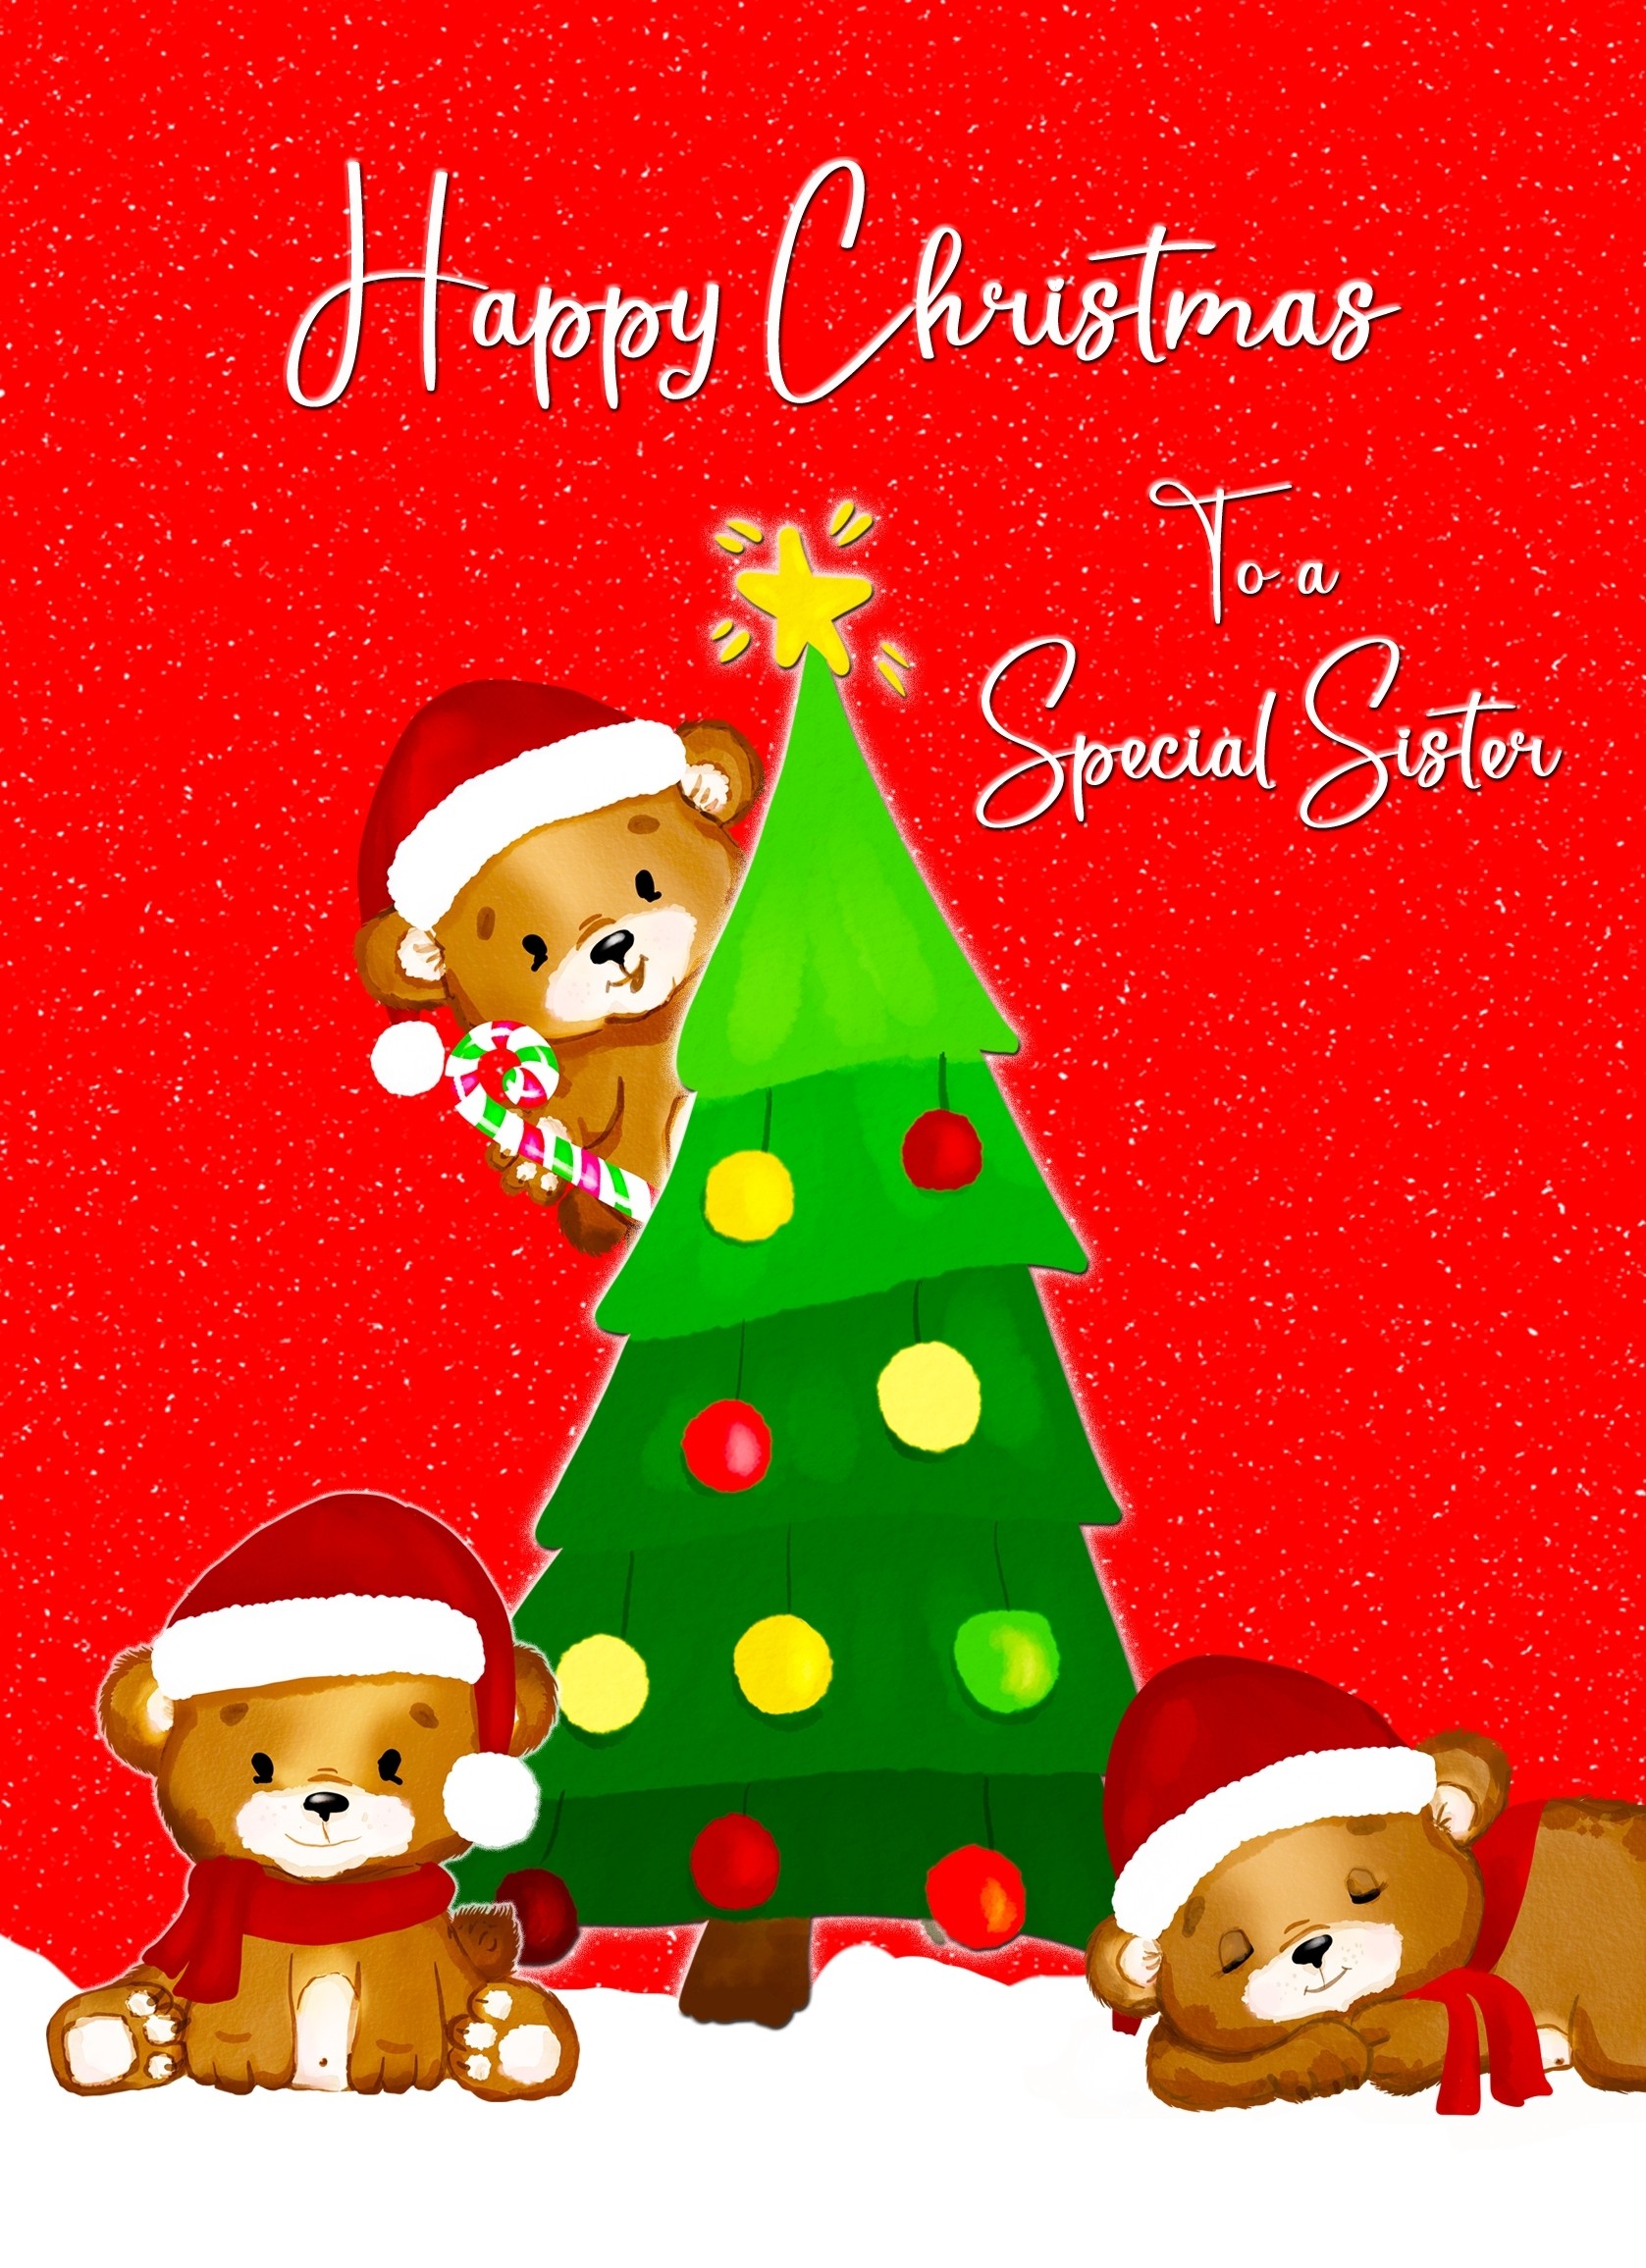 Christmas Card For Sister (Red Christmas Tree)